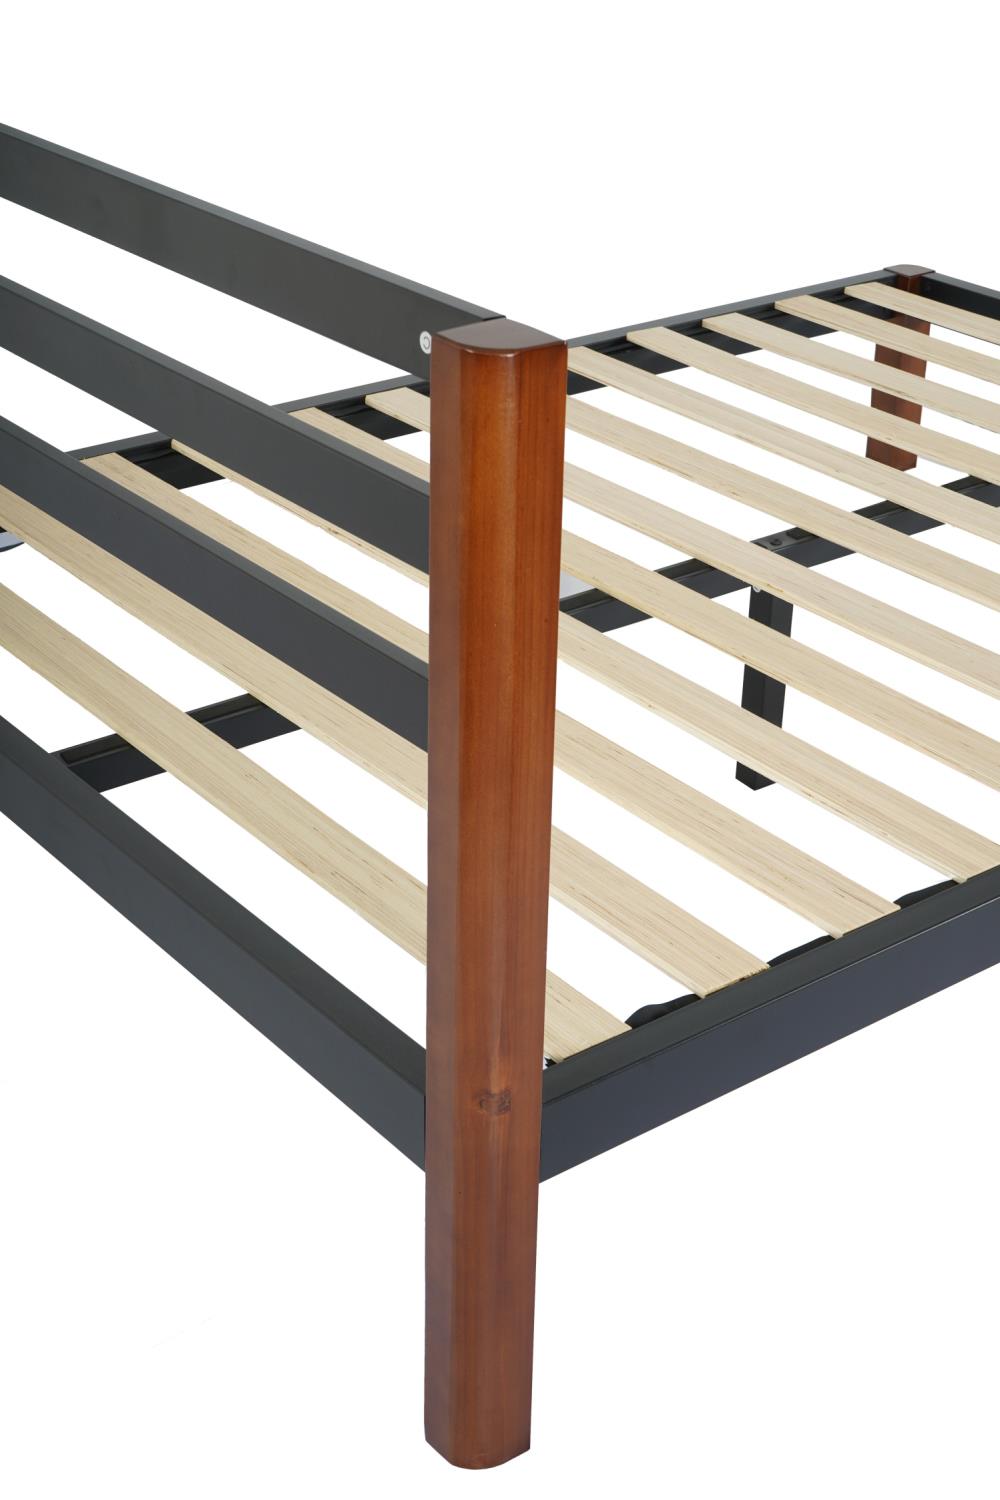 Baja Metal Platform Bed Frame with Slats - Black - King